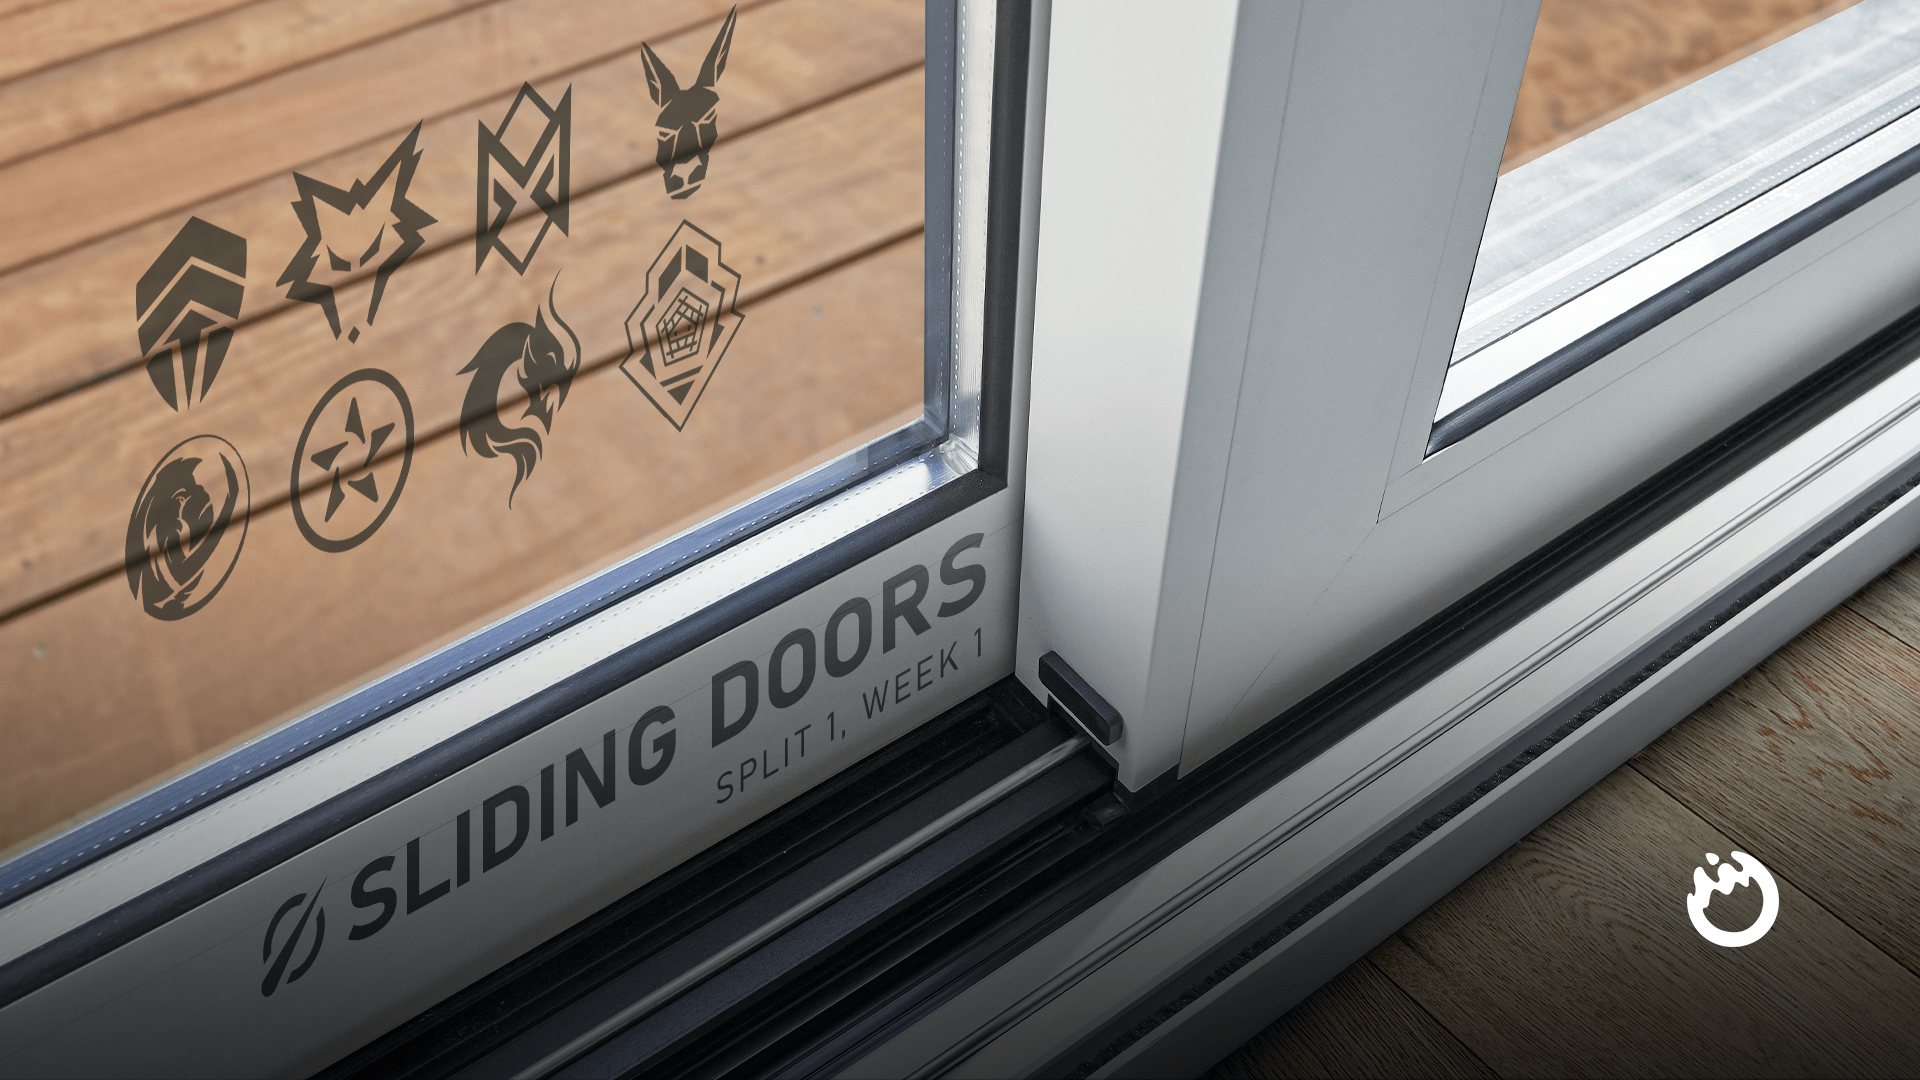 Sliding Doors: LCO 2022 Split 1, Week 1